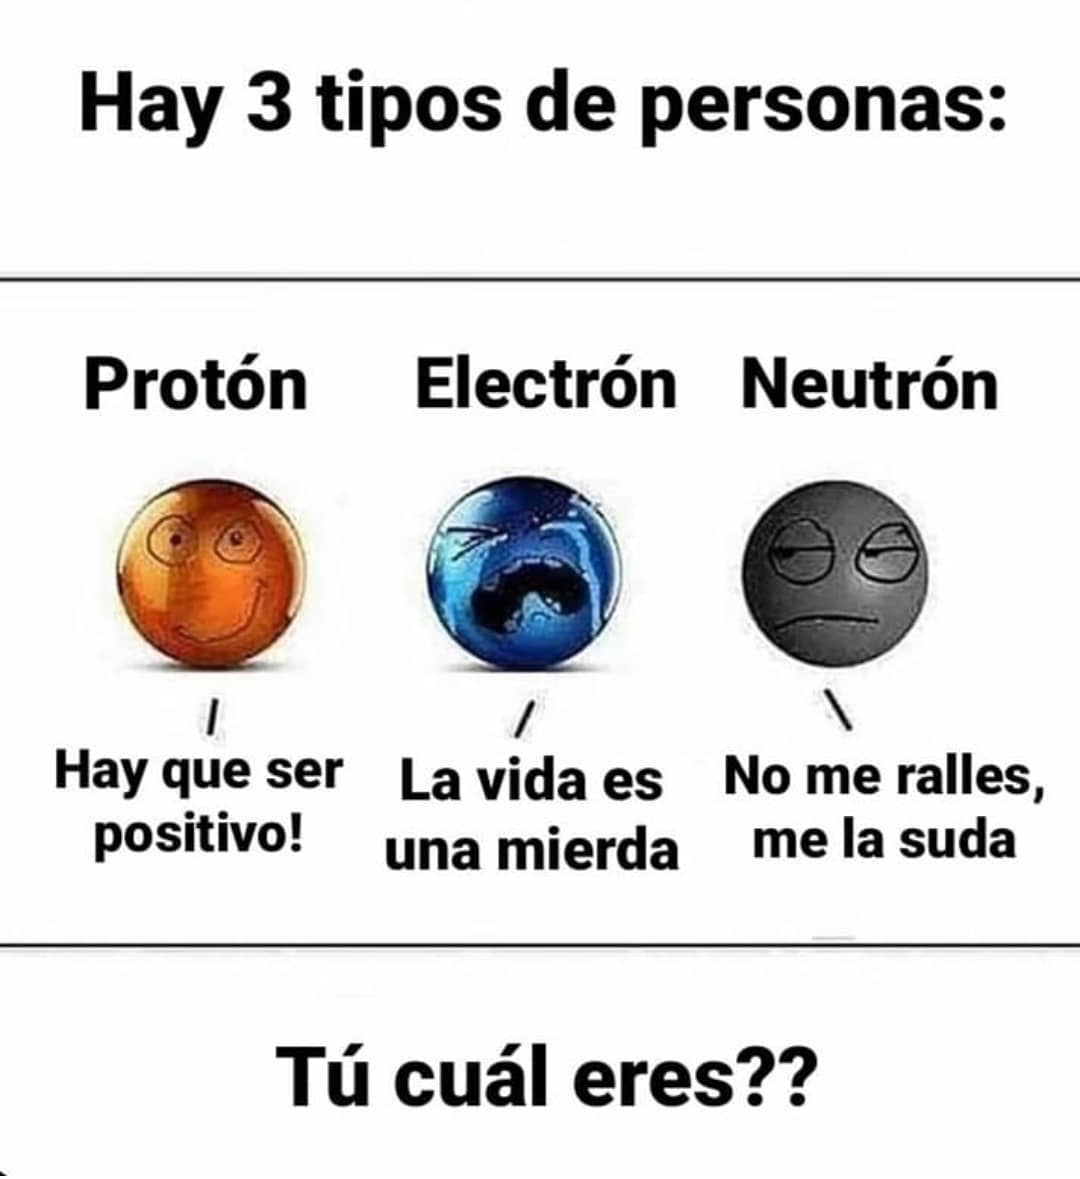 Hay 3 tipos de personas: Protón: Hay que ser positivo. Electrón: La vida es una mierda. Neutrón: No me ralles, me la suda. Tú cuál eres??